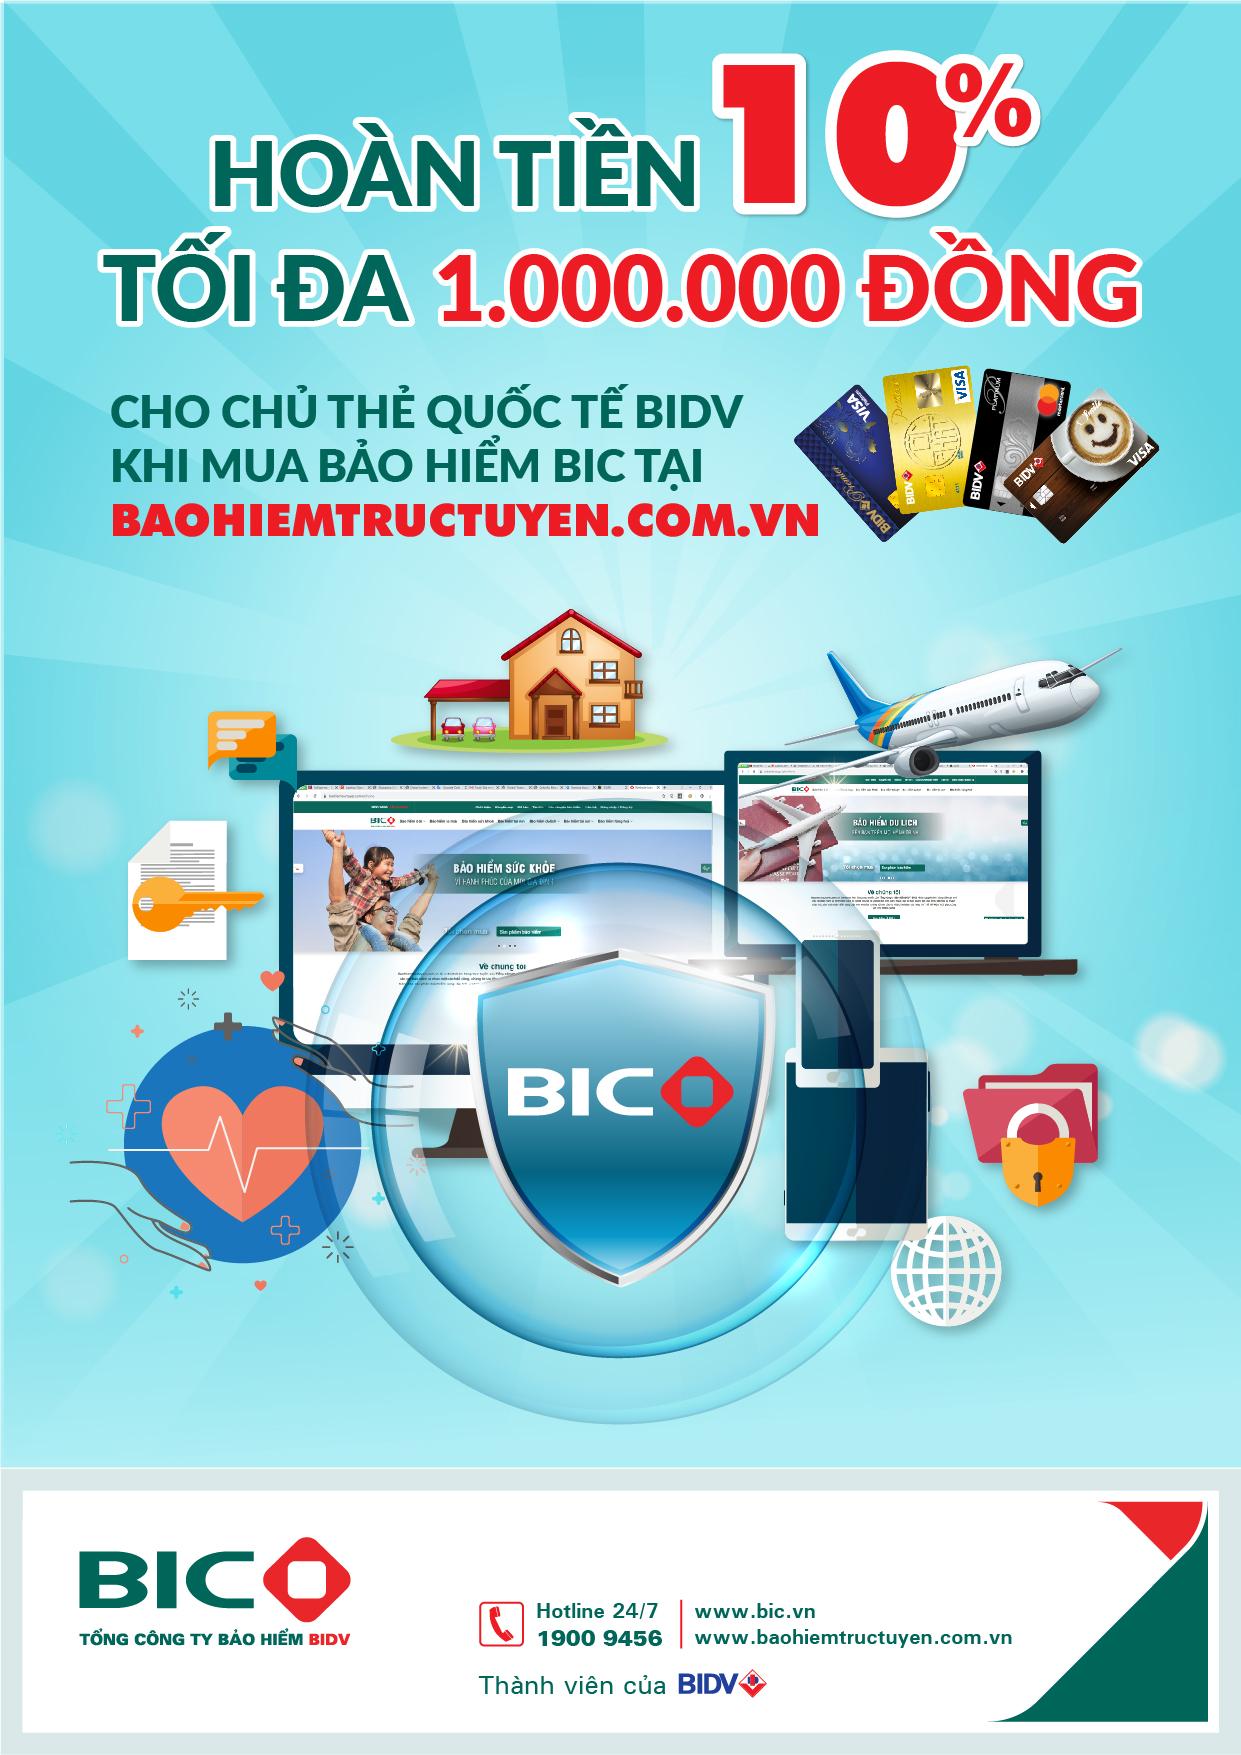 Hoàn tiền tới 1.000.000 đồng cho chủ thẻ BIDV mua bảo hiểm BIC trực tuyến